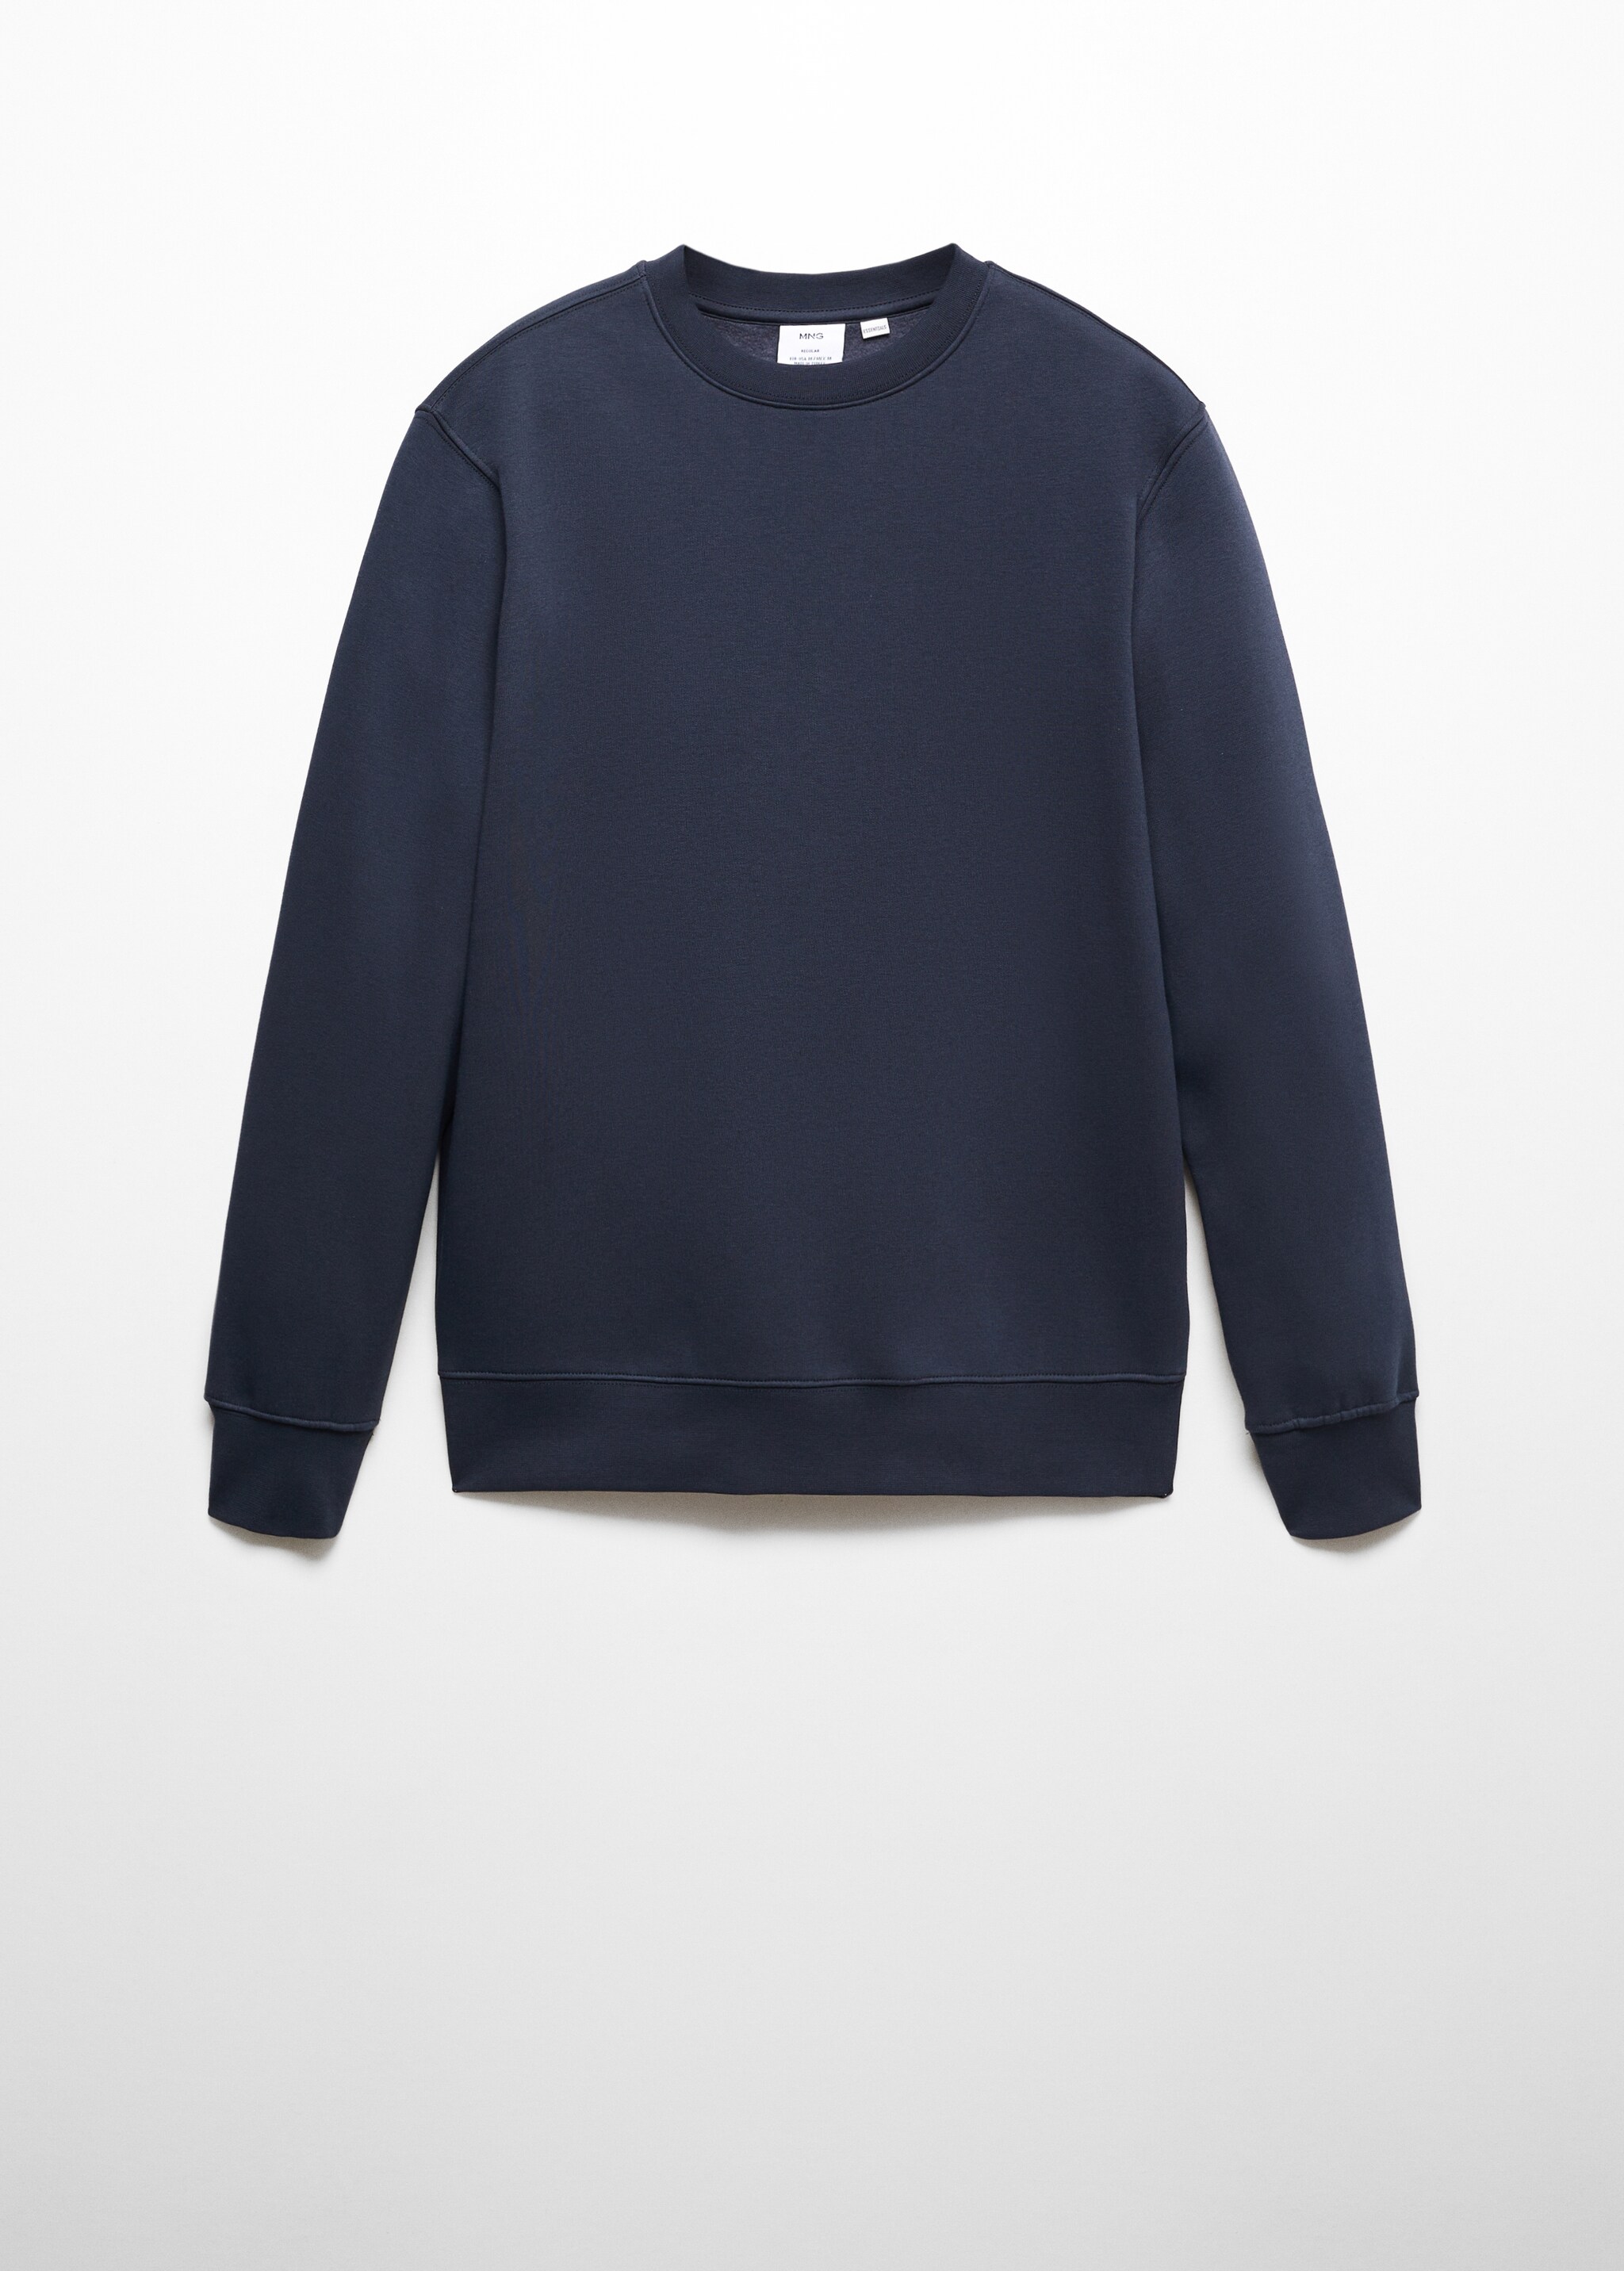 Sweatshirt leve de algodão - Artigo sem modelo